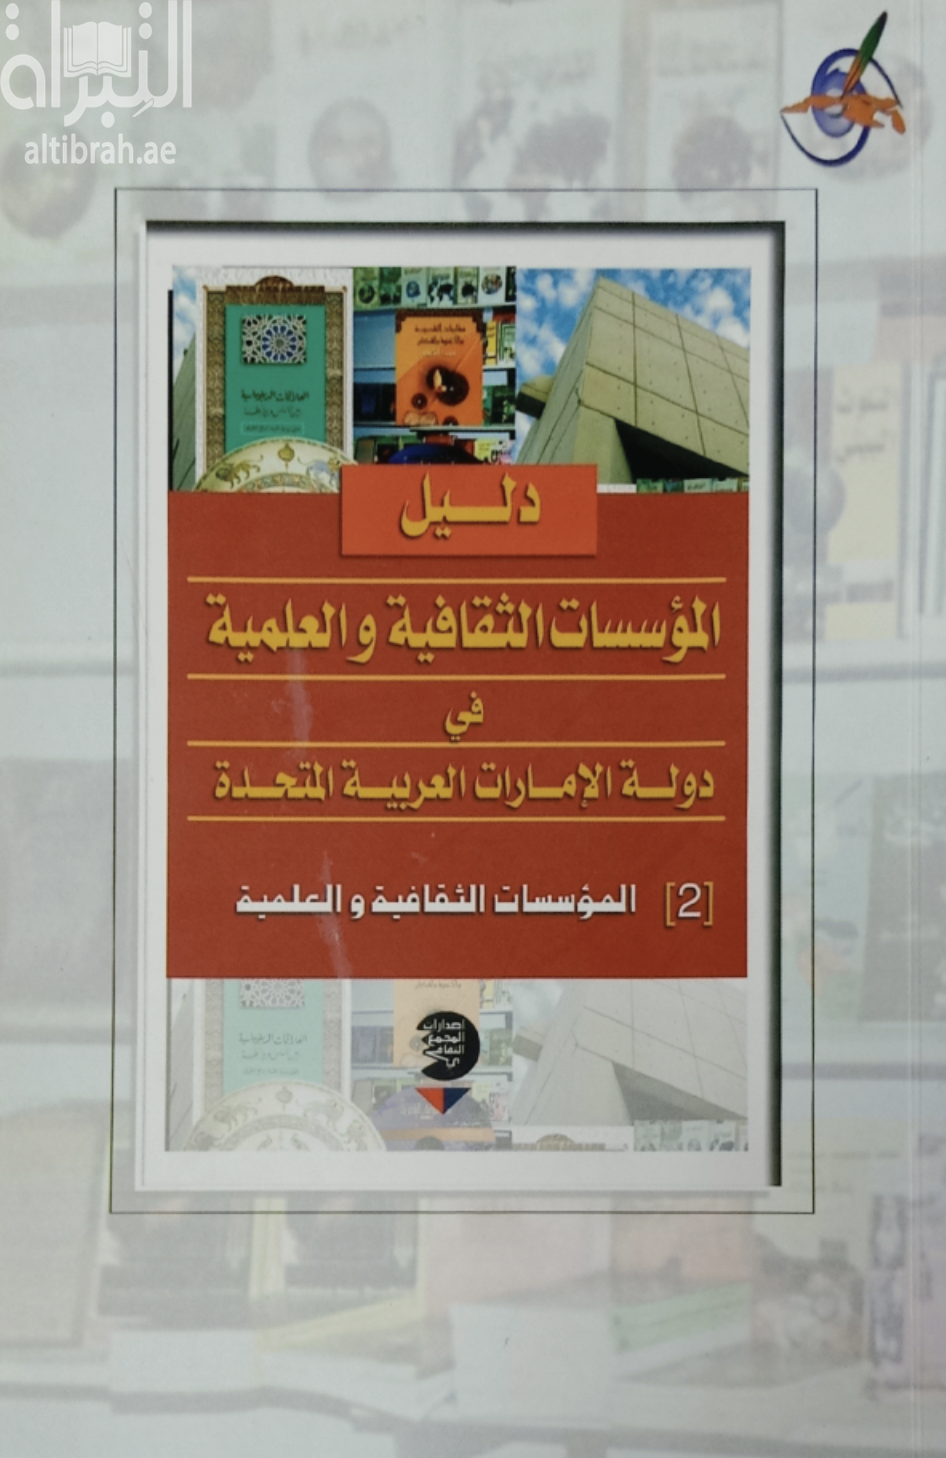 دليل المؤسسات الثقافية والعلمية في دولة الإمارات العربية المتحدة : 2 المؤسسات الثقافية والعلمية